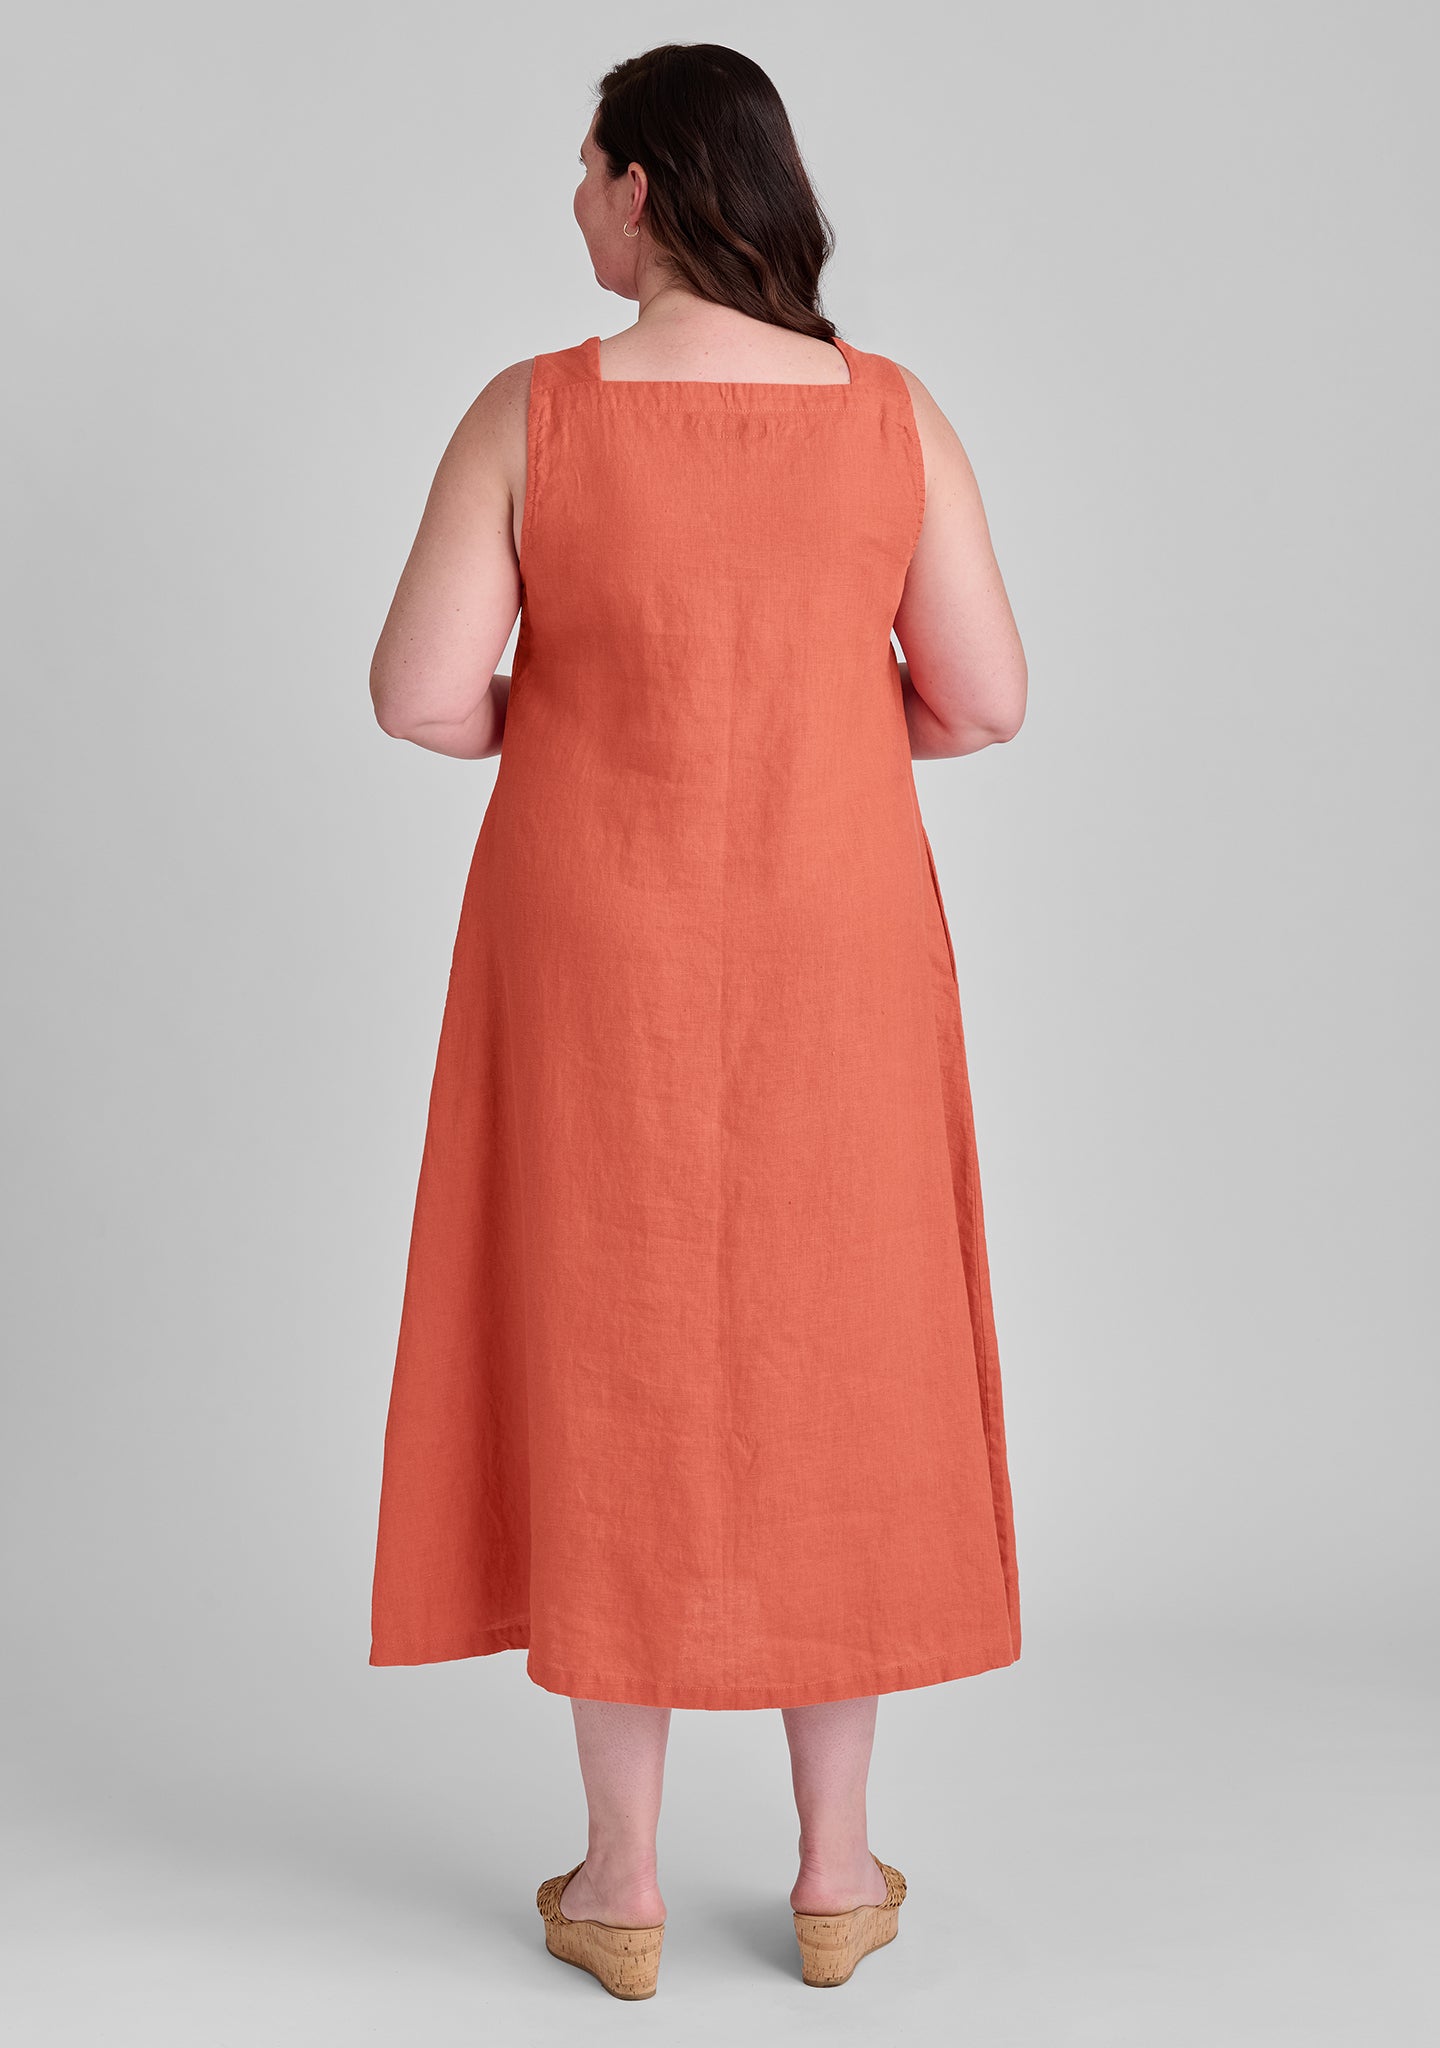 harlow dress linen maxi dress details